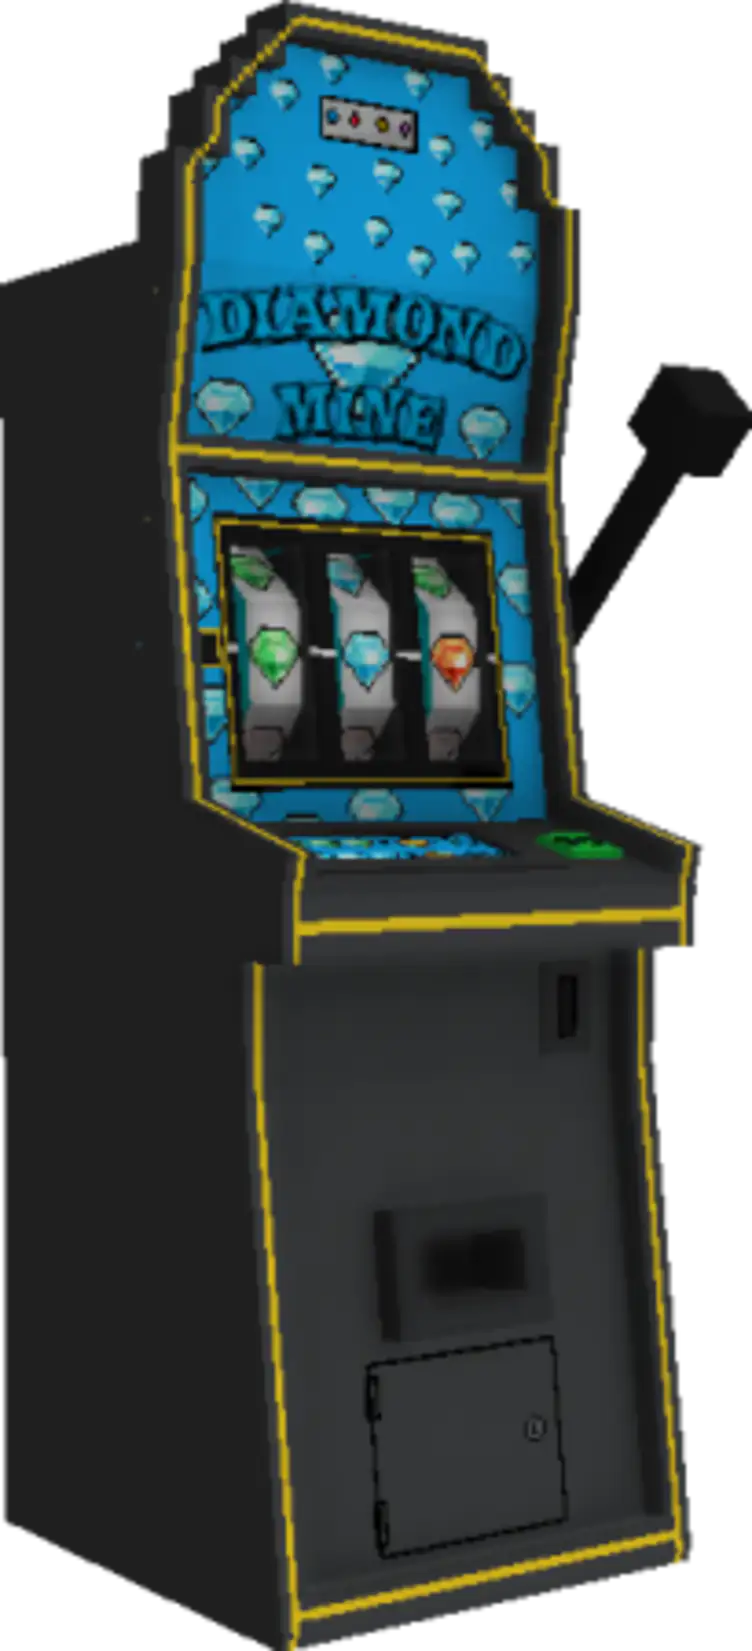 Arcade Craft - modsgamer.com